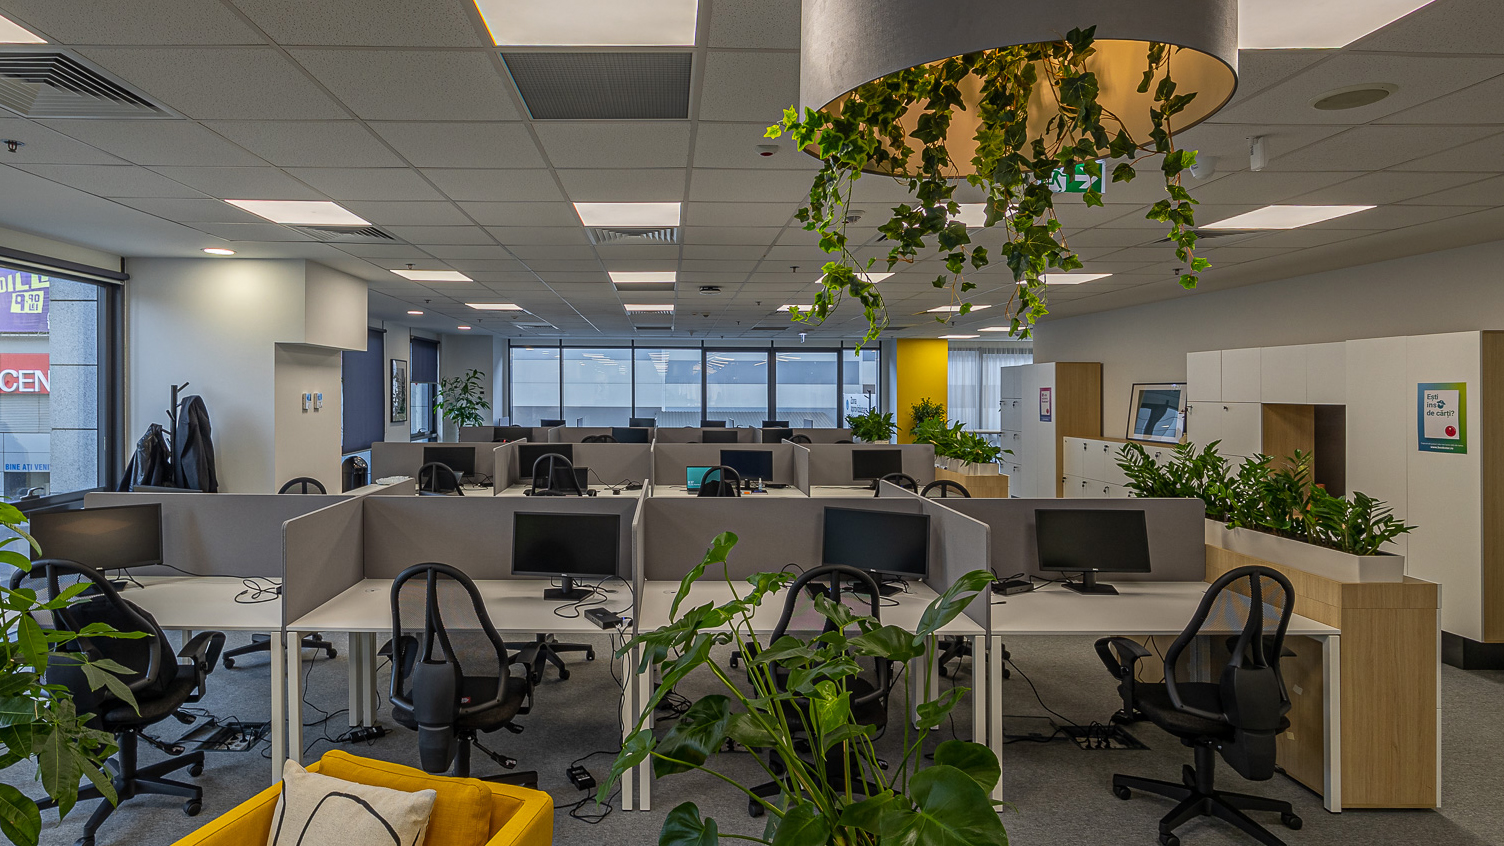 În zona de Open Office am utilizat scaune ergonomice și am delimitat fiecare birou pentru ca fiecare angajat să aibă spațiu personal. Am folosit plante de birou ce contribuie la buna dispoziție și productivitate.